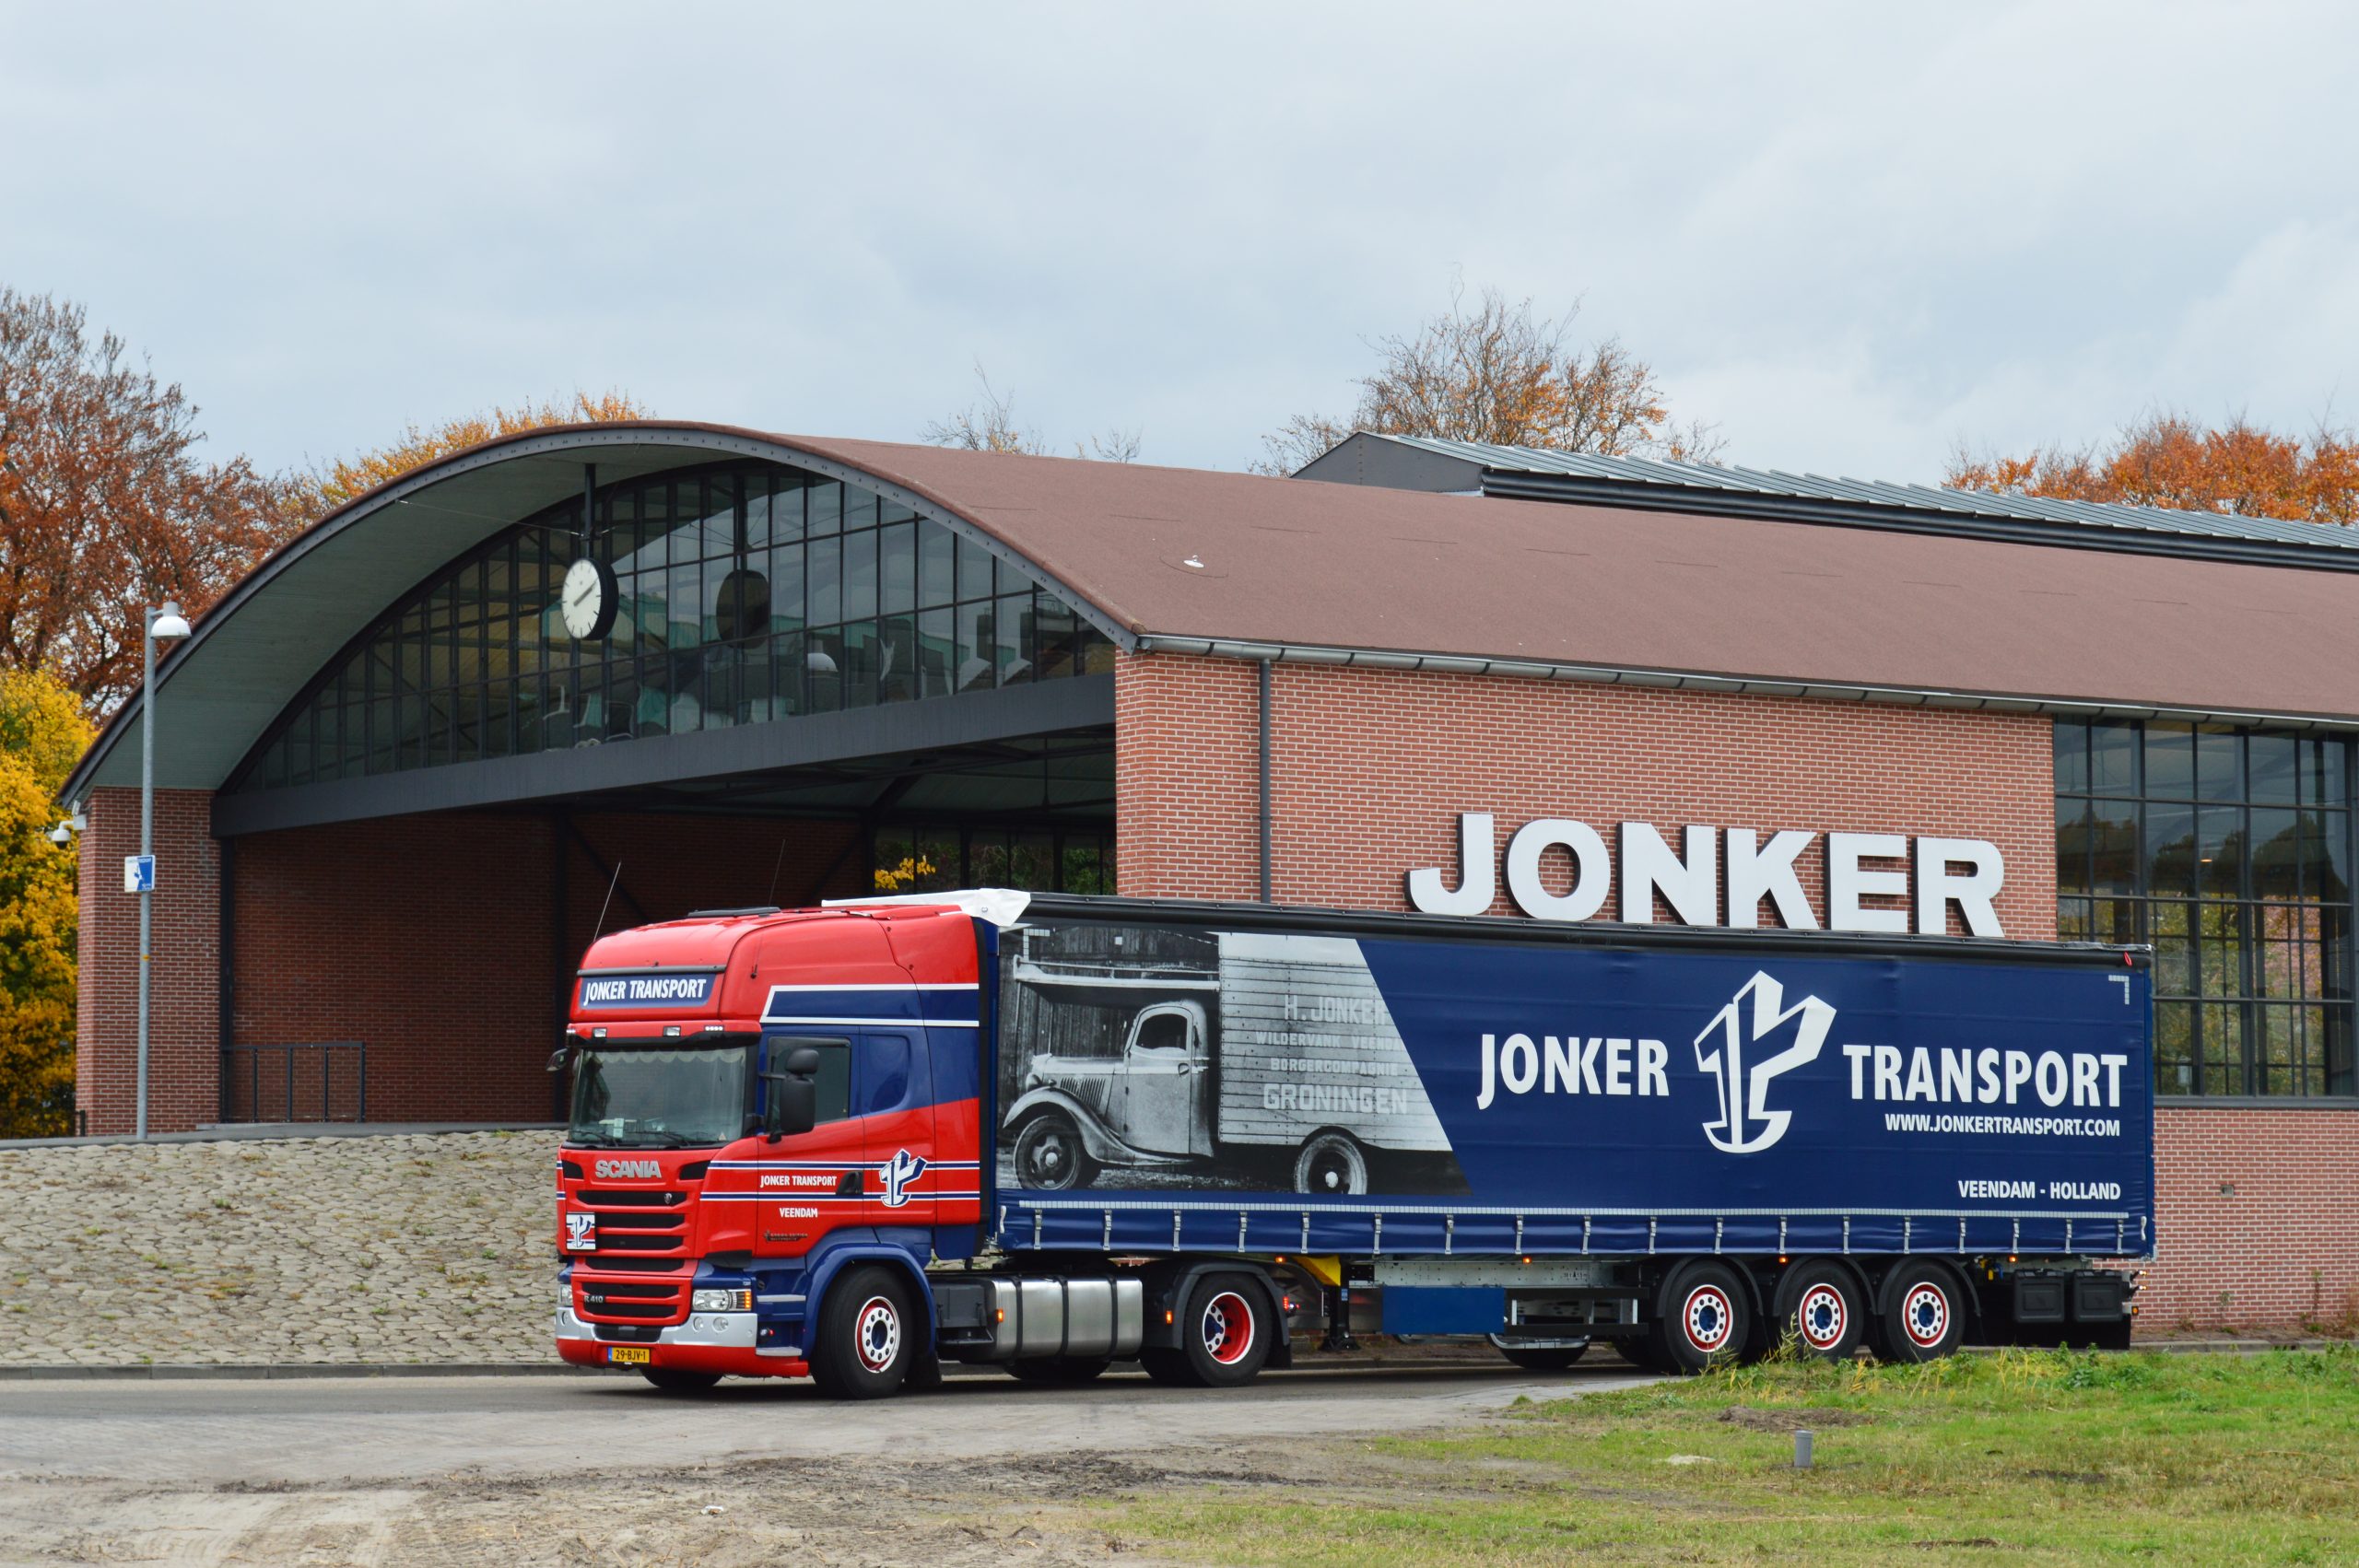 Jonker transport